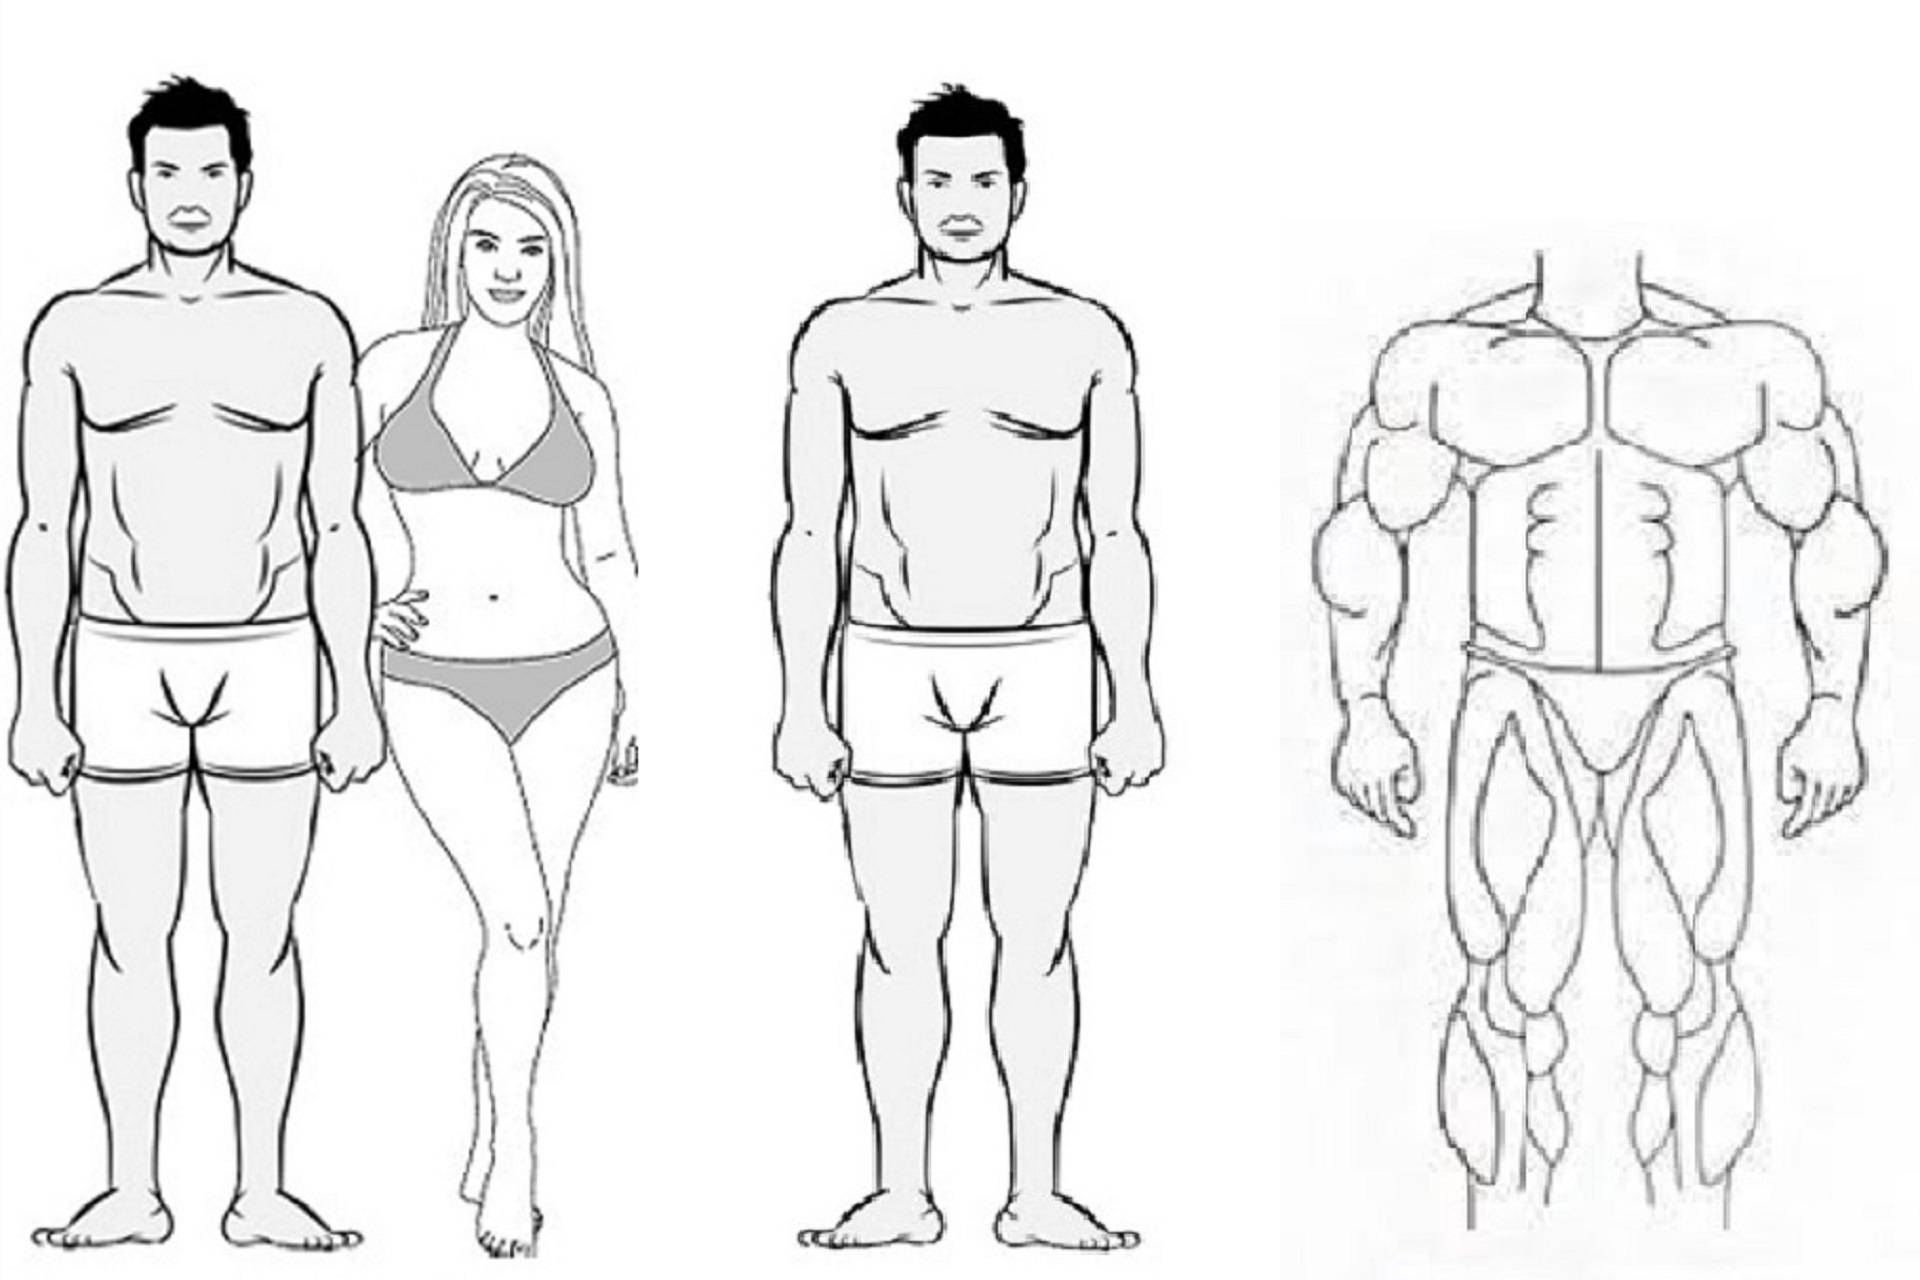 Как питаться и тренироваться в зависимости от типа телосложения?